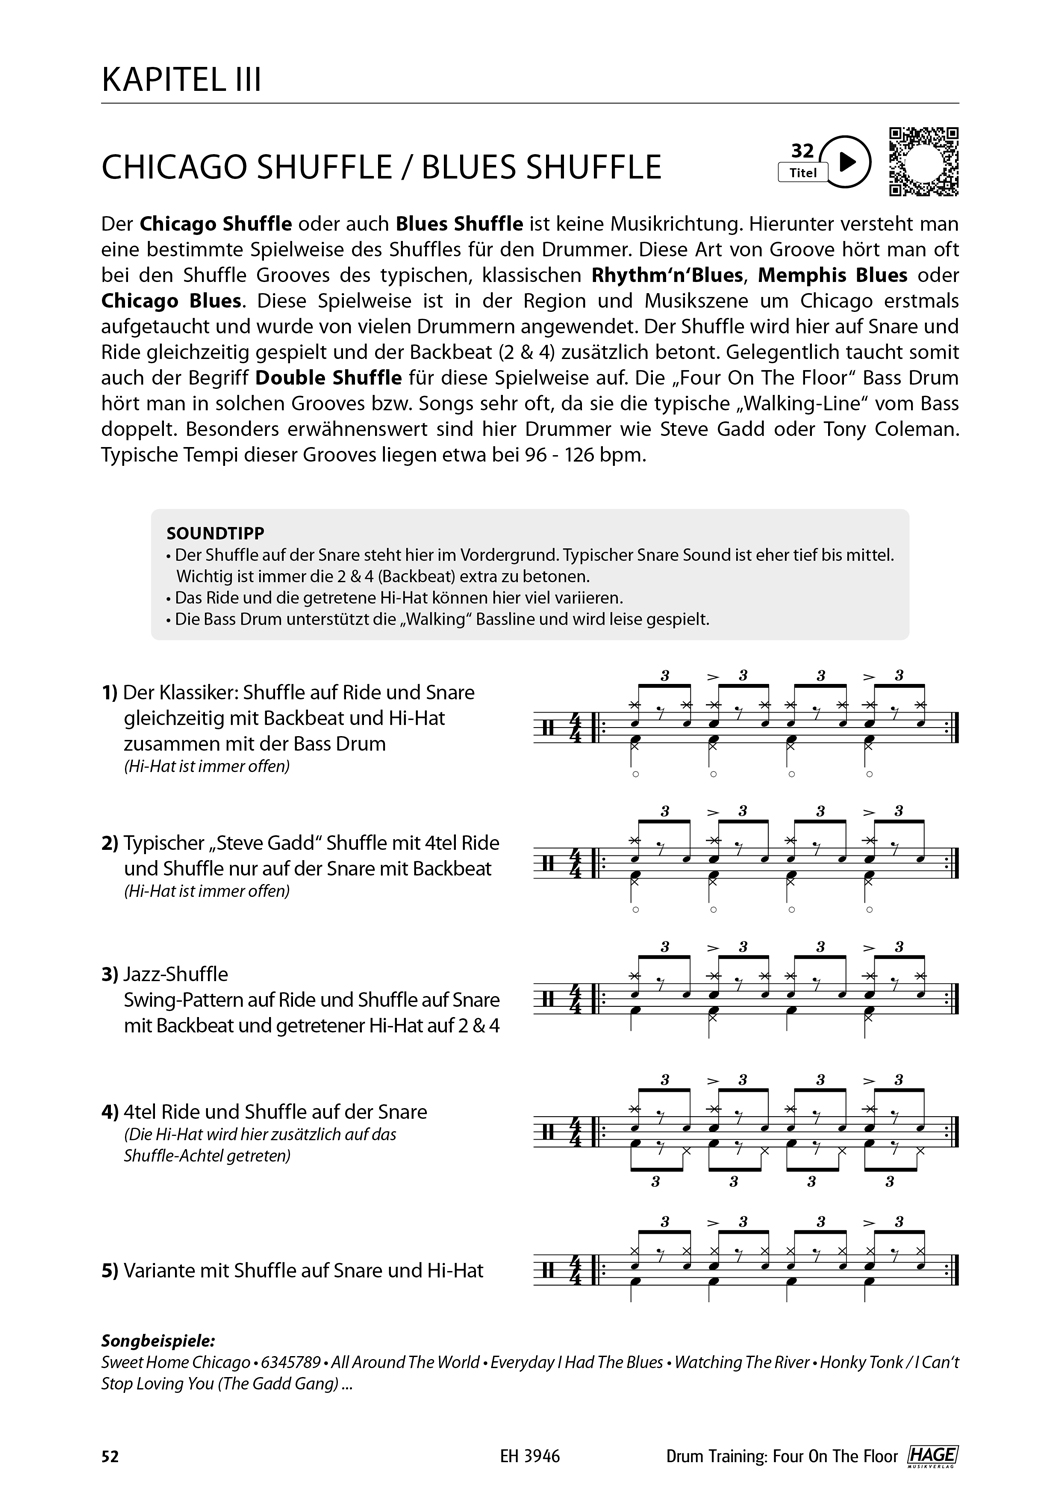 Drum Training Four On The Floor Seiten 10